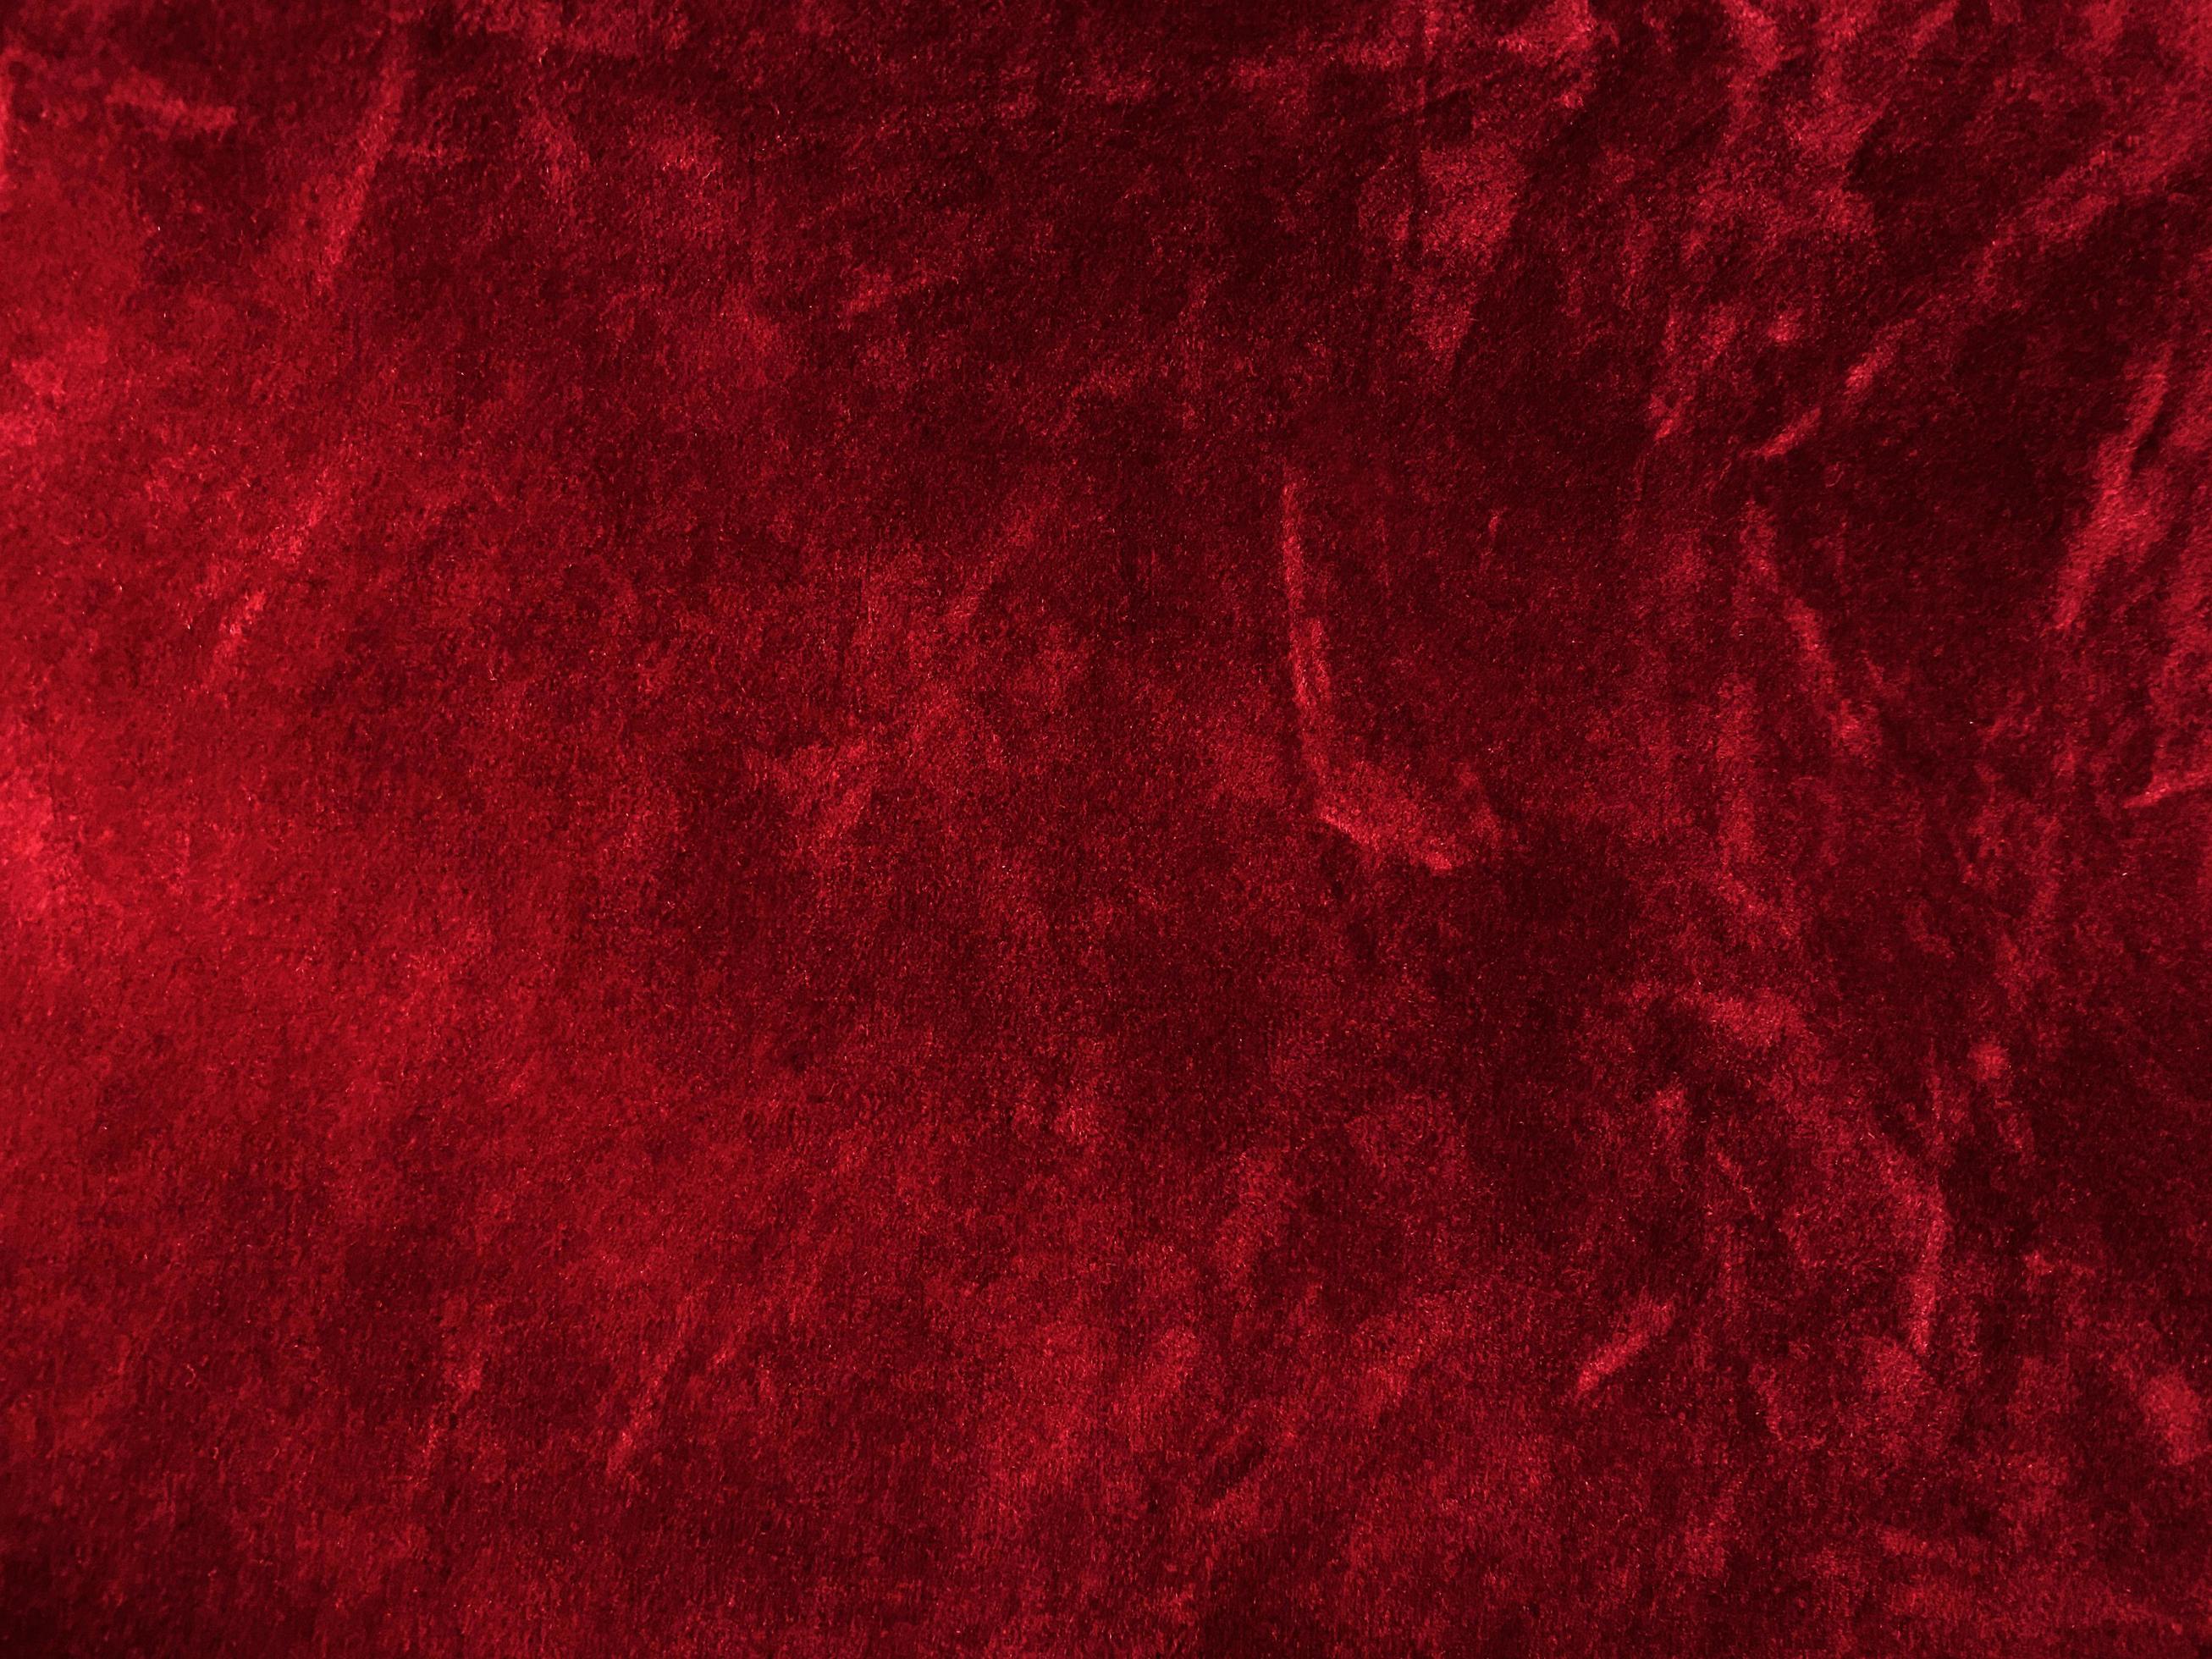 Texture vải đỏ nhung là một lựa chọn hoàn hảo khi làm nền cho các thiết kế của bạn. Nó làm nổi bật được sự quý phái và sự ấm cúng của việc sử dụng nhung tạo thành nền. Hãy xem và cảm nhận!